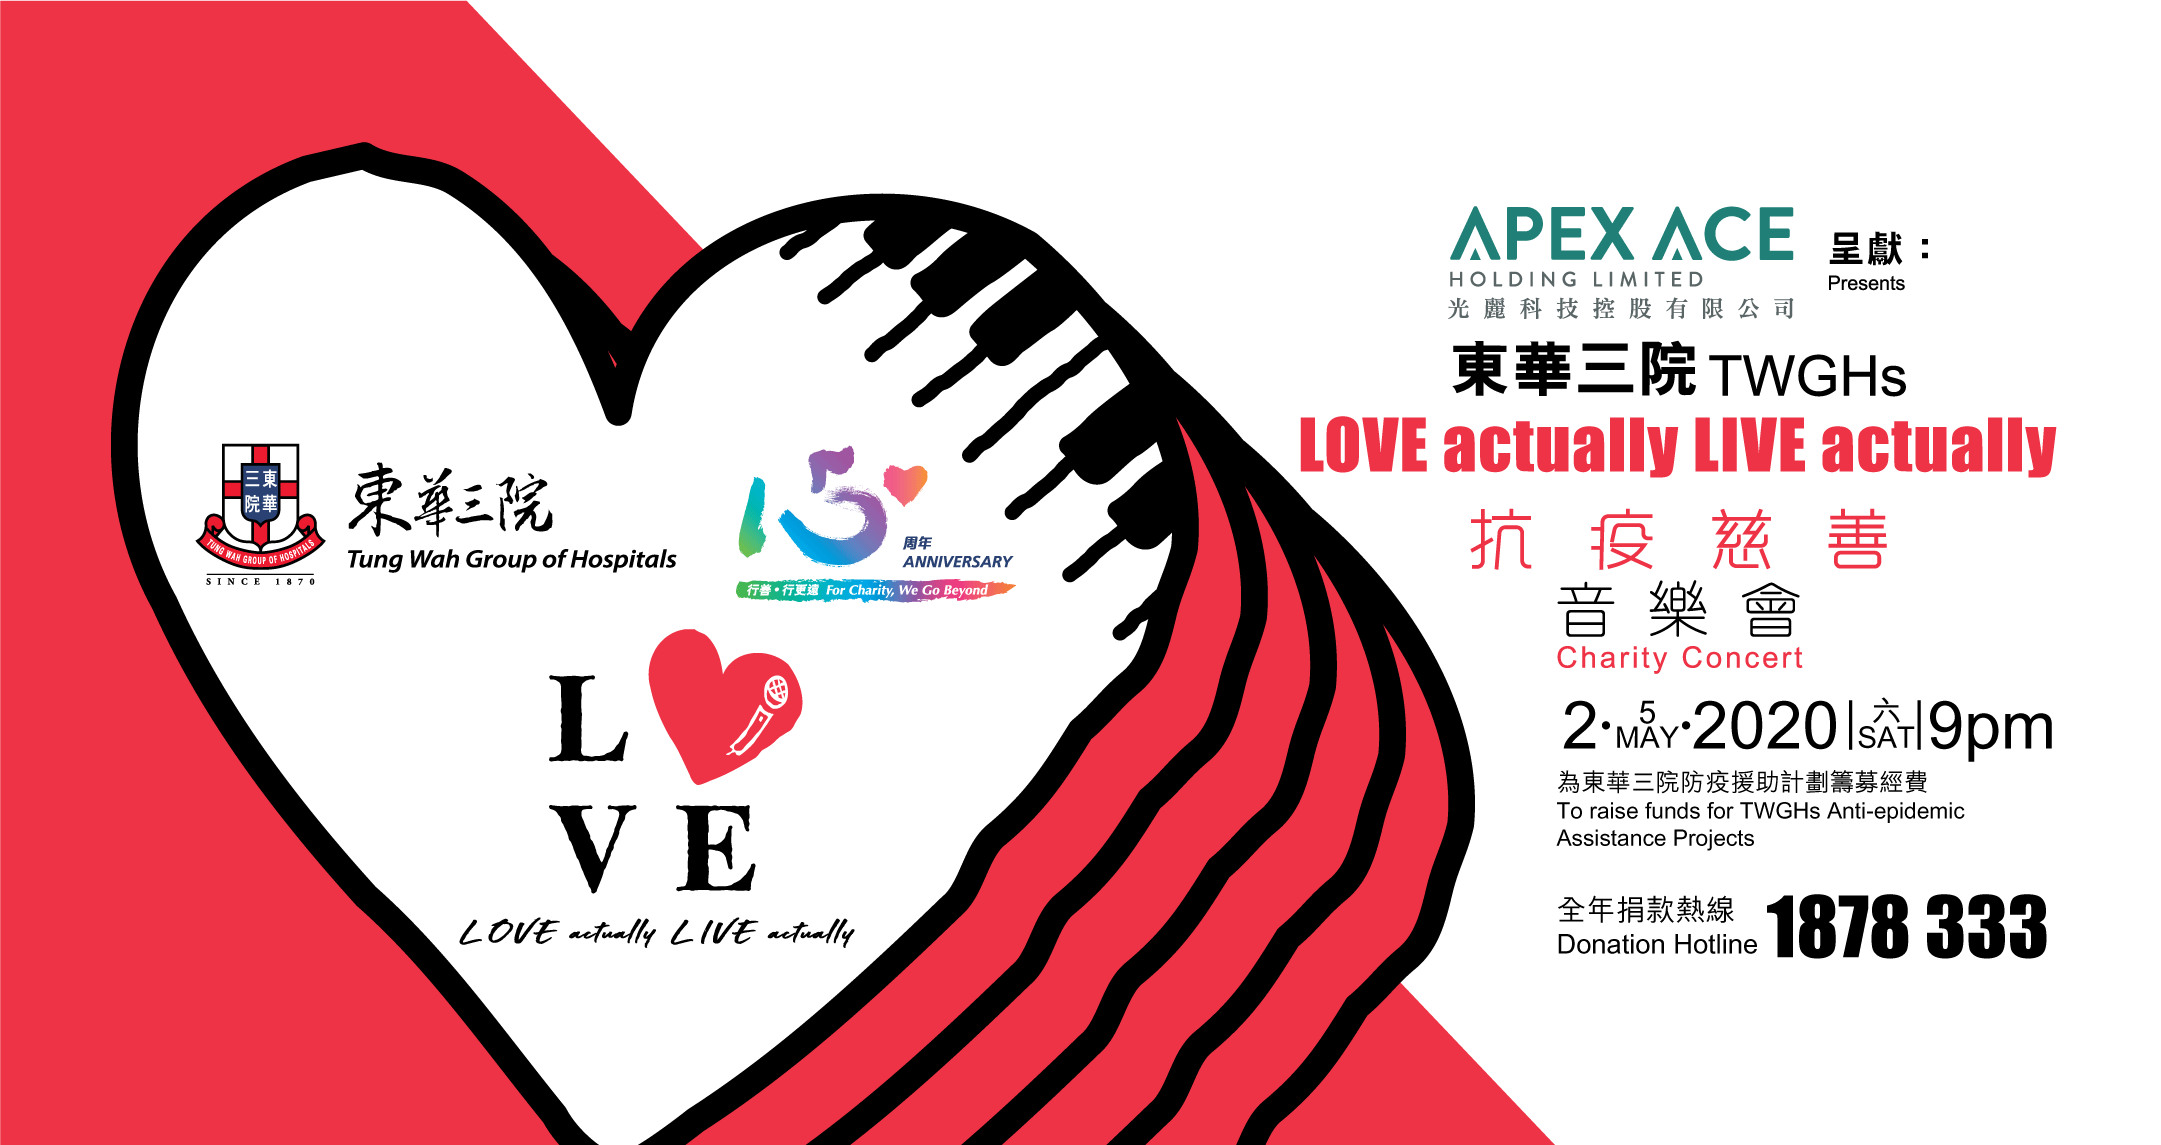 光麗科技控股有限公司呈獻 東華三院 「 LOVE actually LIVE actually」 抗疫慈善音樂會